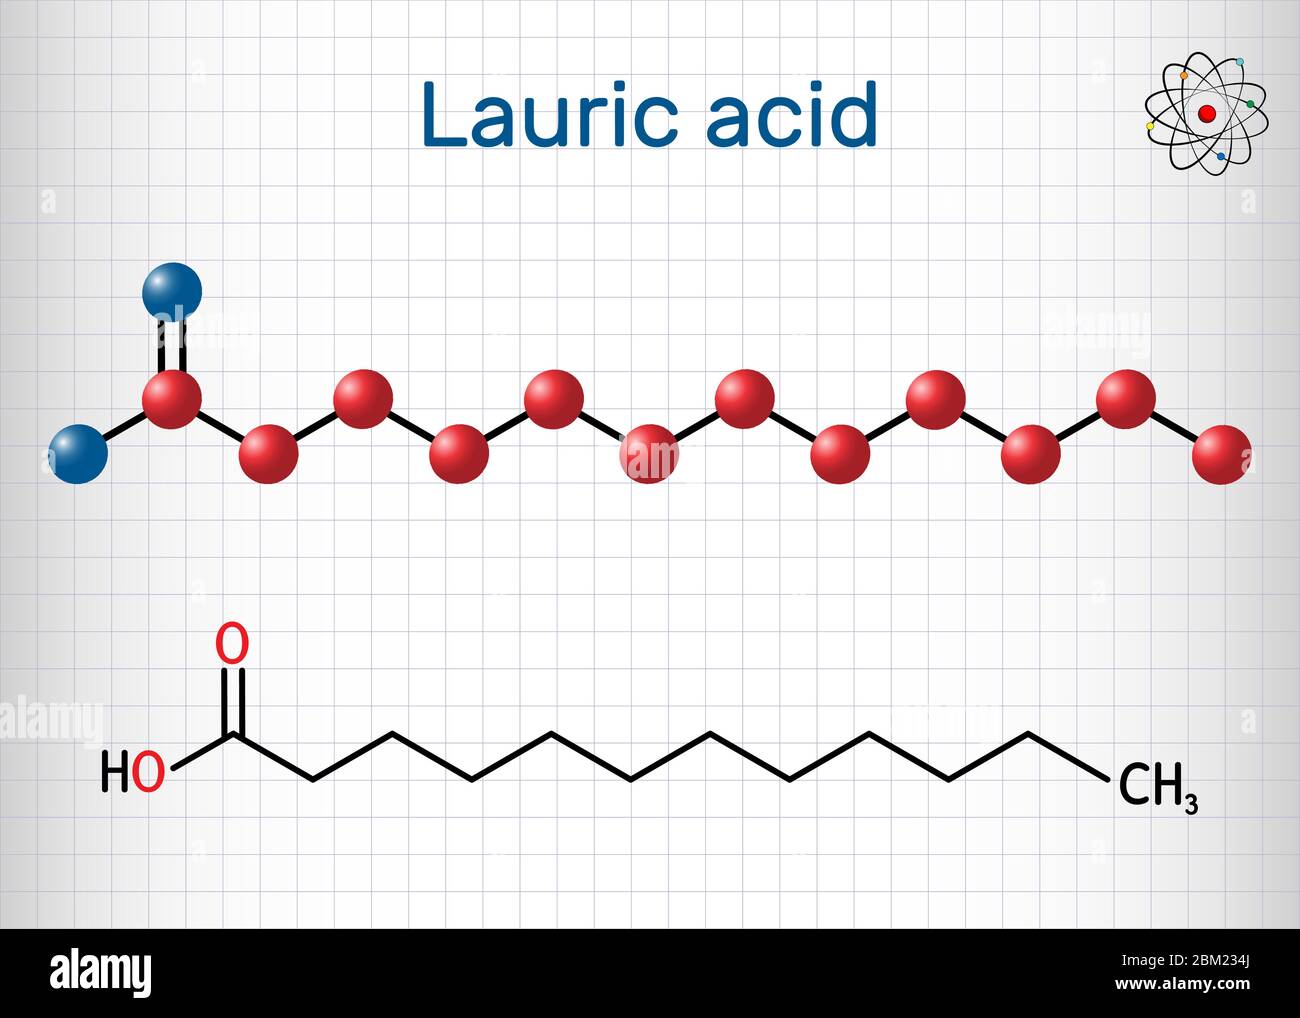 Laurinsäure, Dodecansäure, C12H24O2-Molekül. Es ist eine gesättigte  Fettsäure. Strukturelle chemische Formel und Molekülmodell. Blatt Papier in  einer cag Stock-Vektorgrafik - Alamy